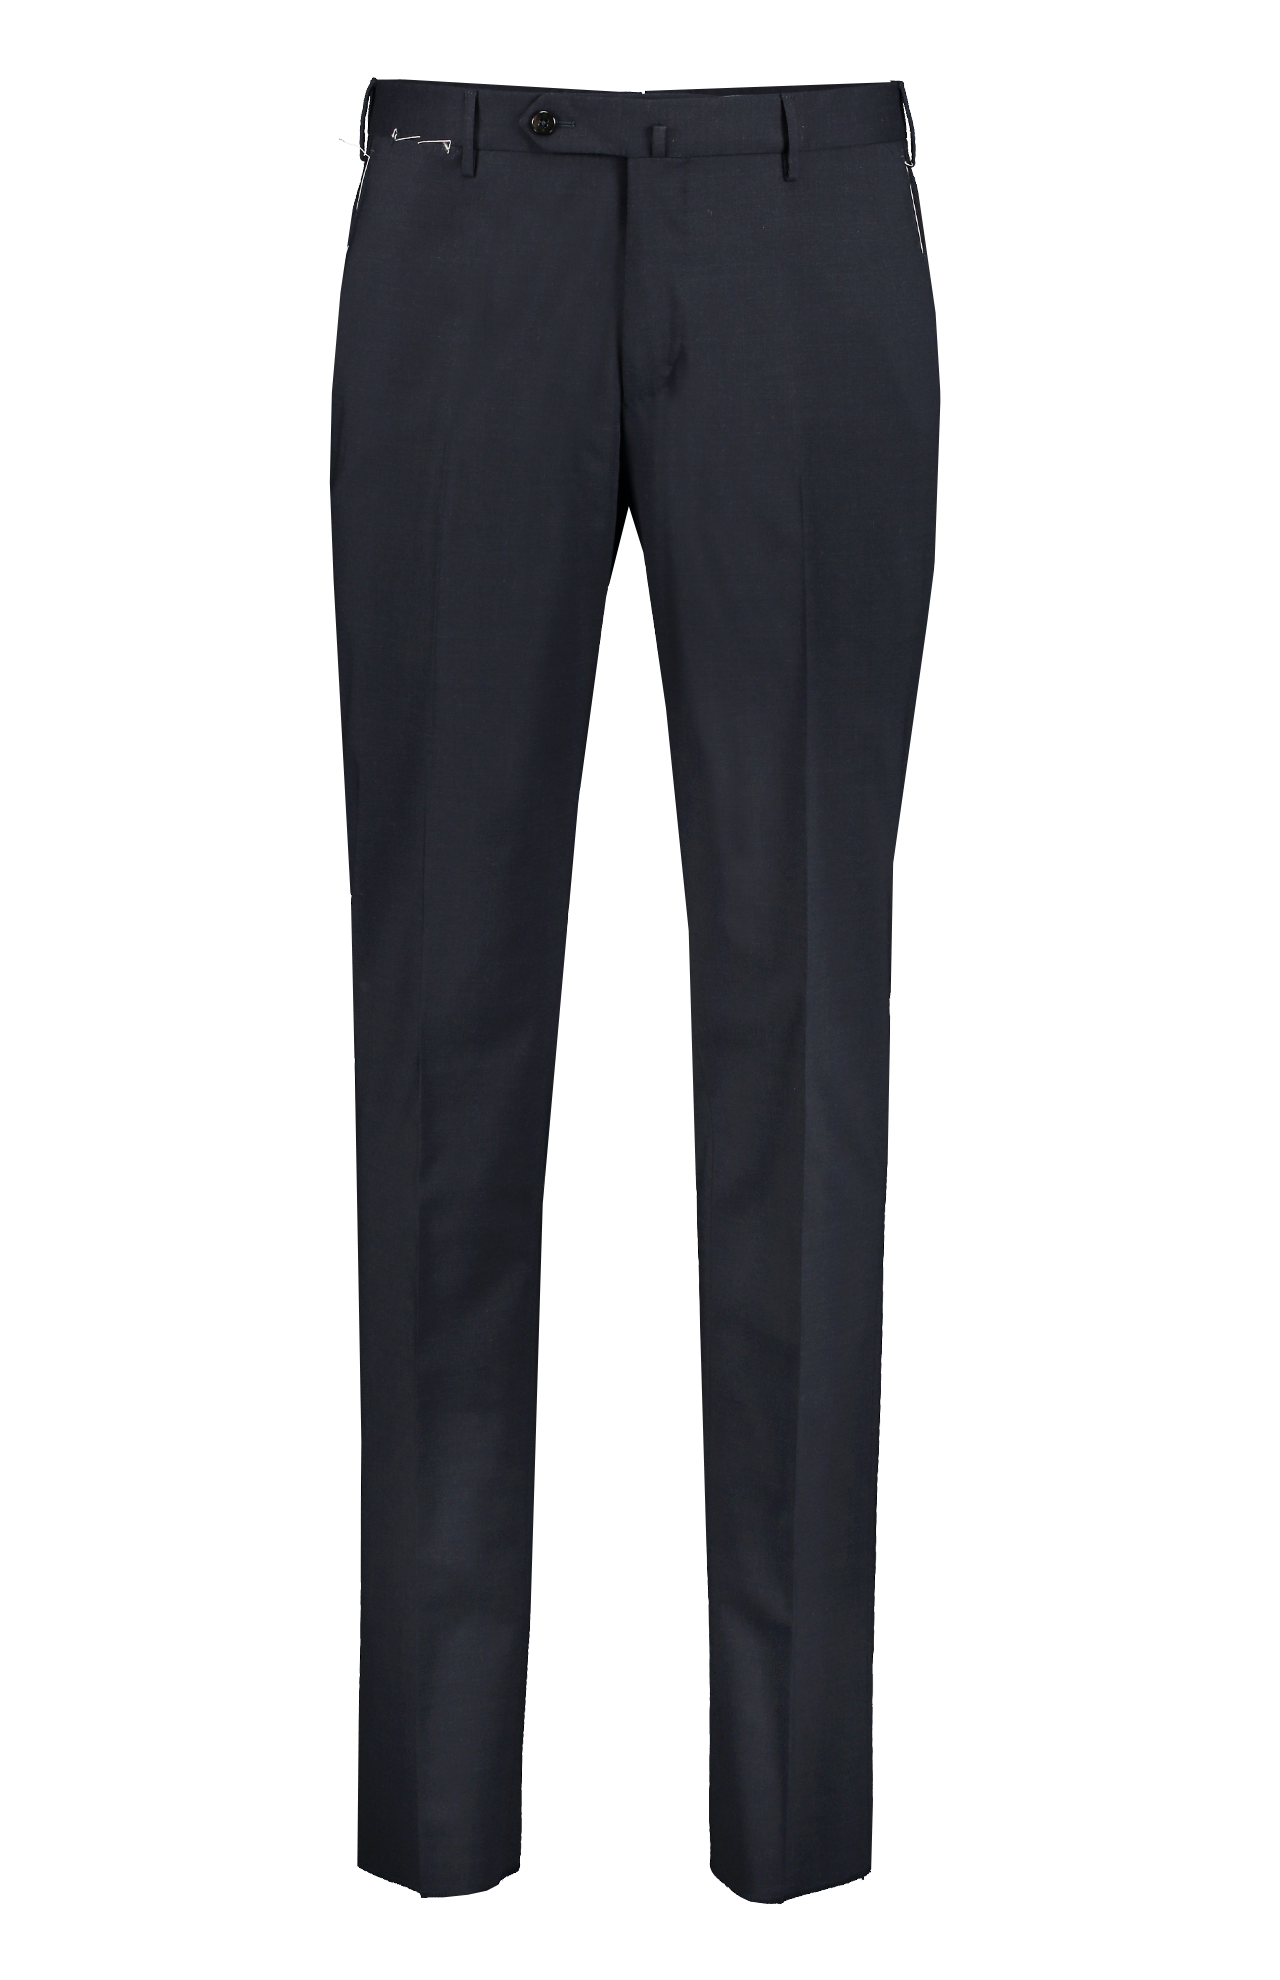 PT Torino Wool Plain Weave Trouser in Navy Melange Mannequin Image(7062203891827)